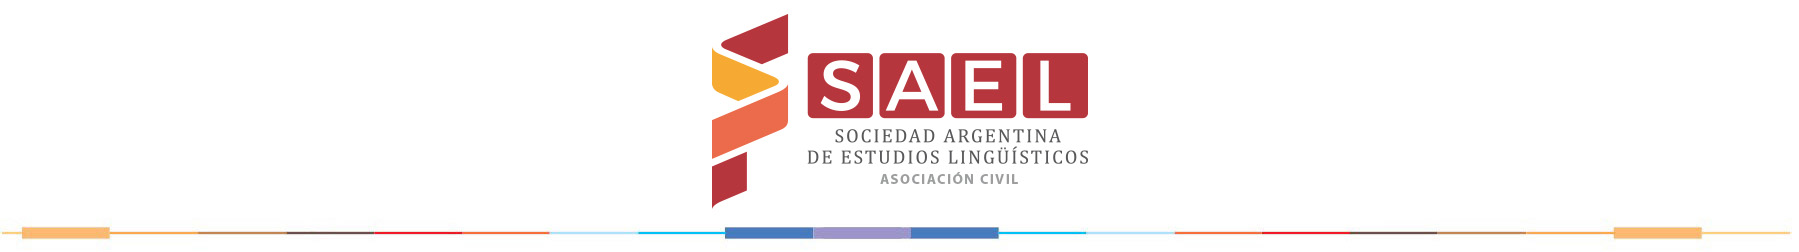 Sociedad Argentina de Estudios Lingüísticos